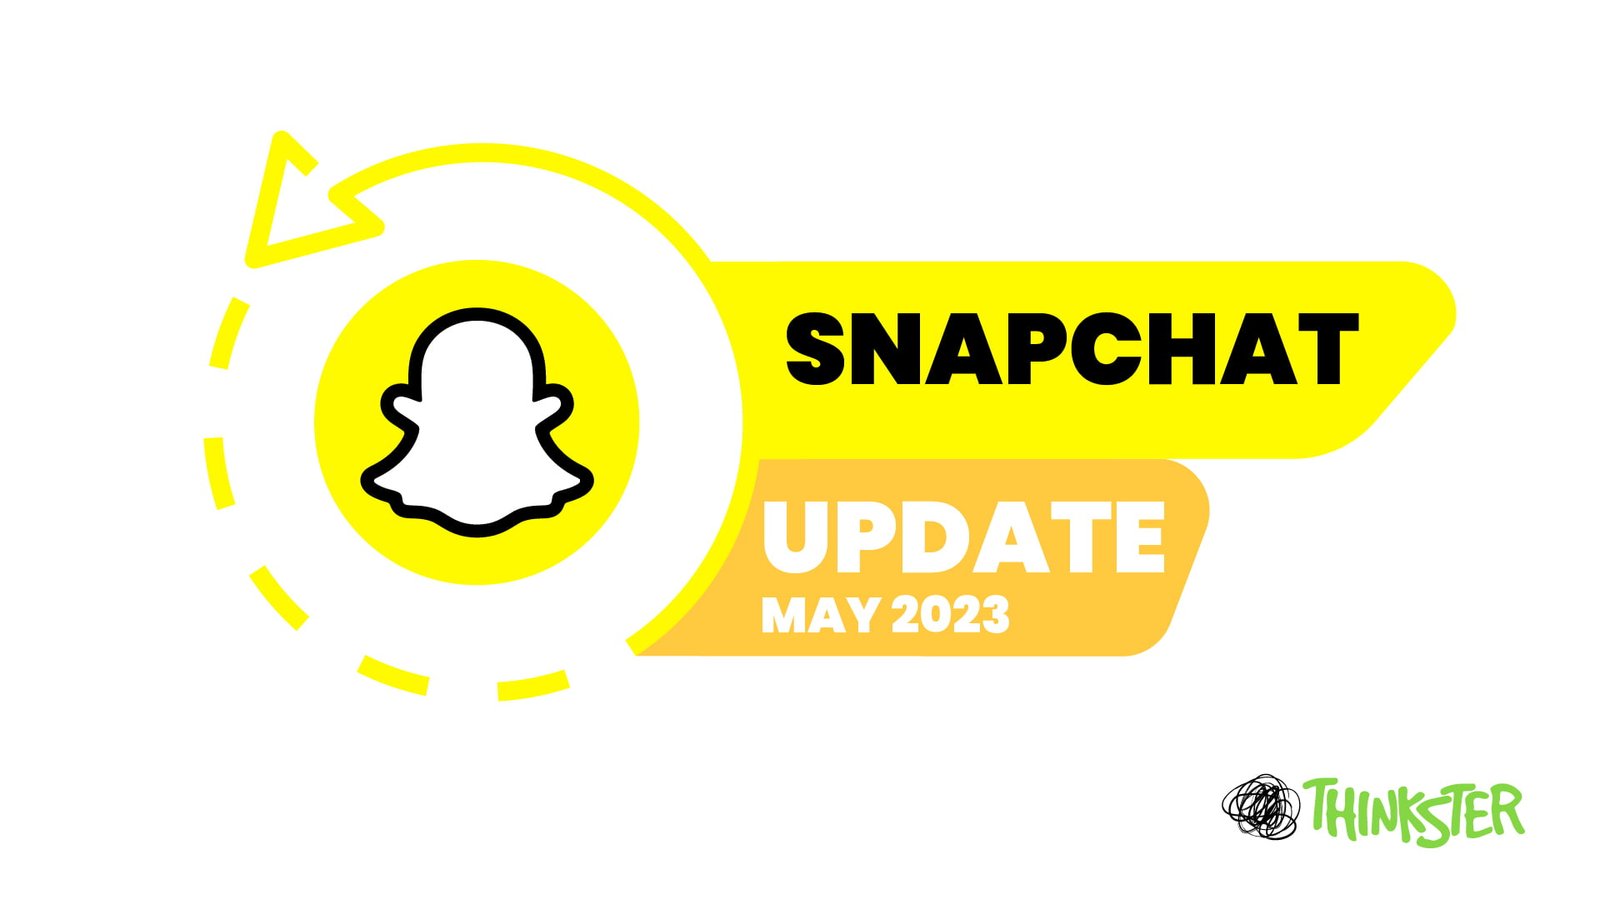 Snapchat may 2023